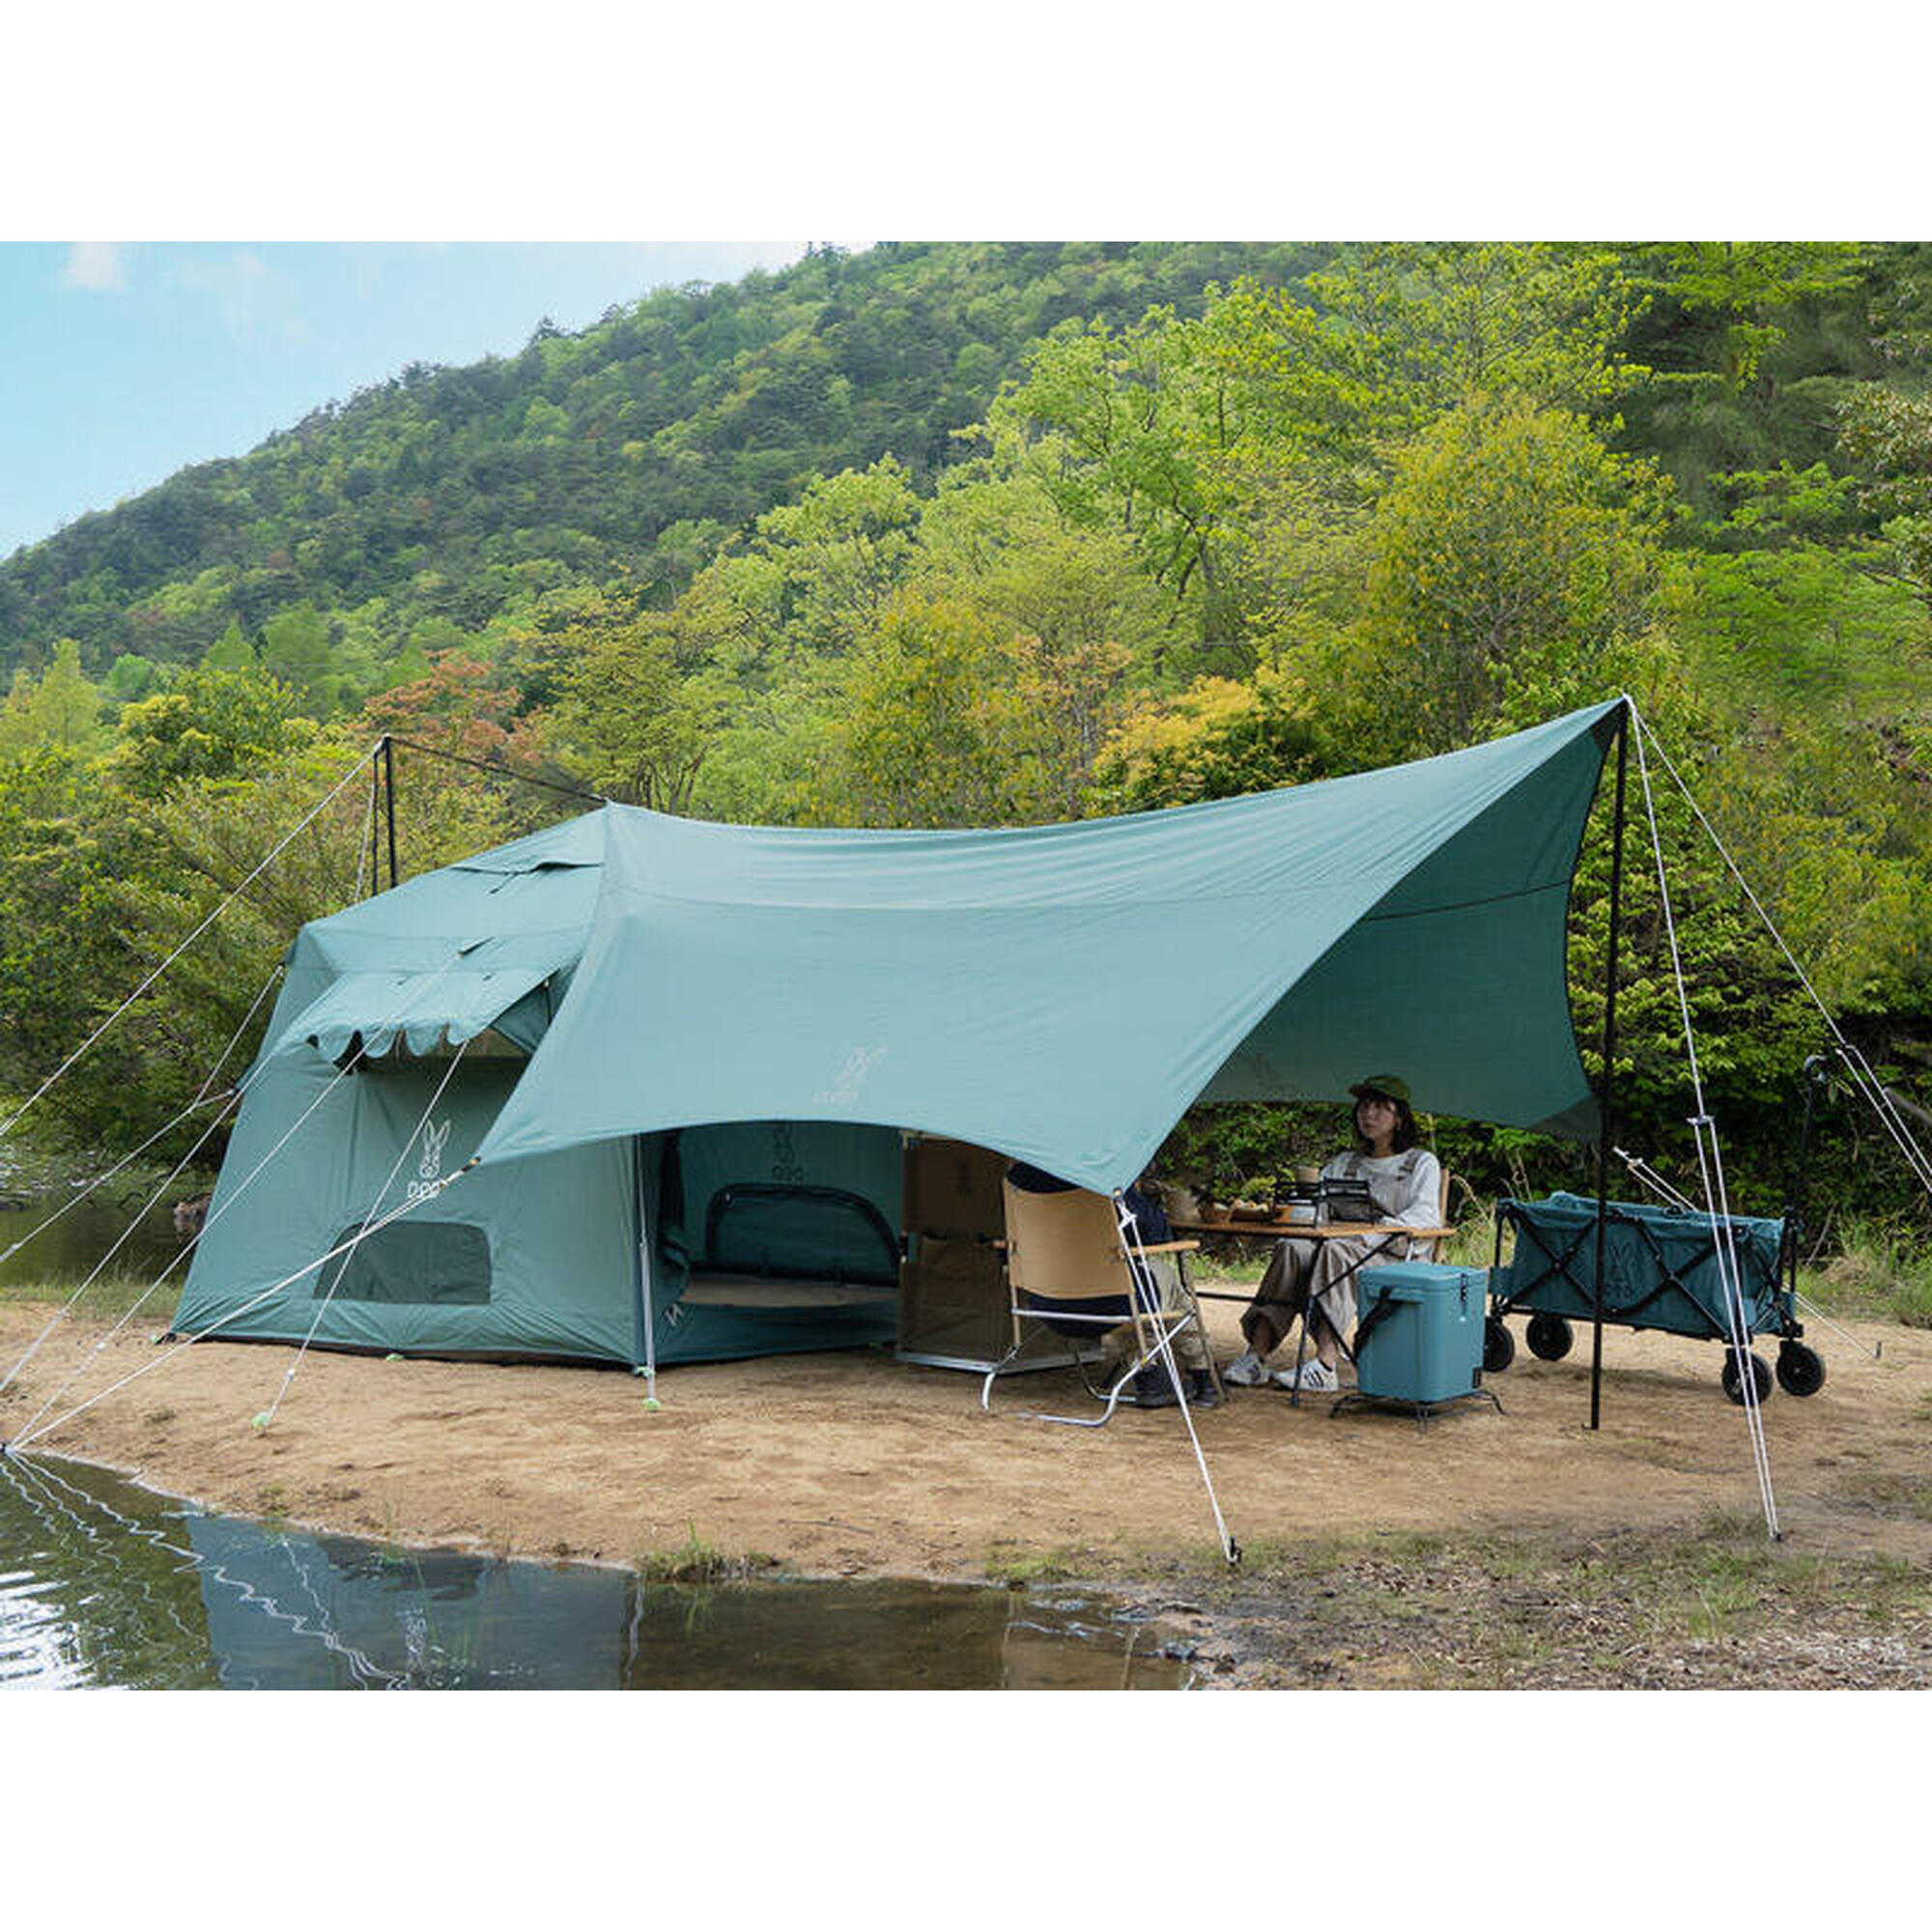 Itsuka no TC TT5-919-BL Camping Tarps - Blue